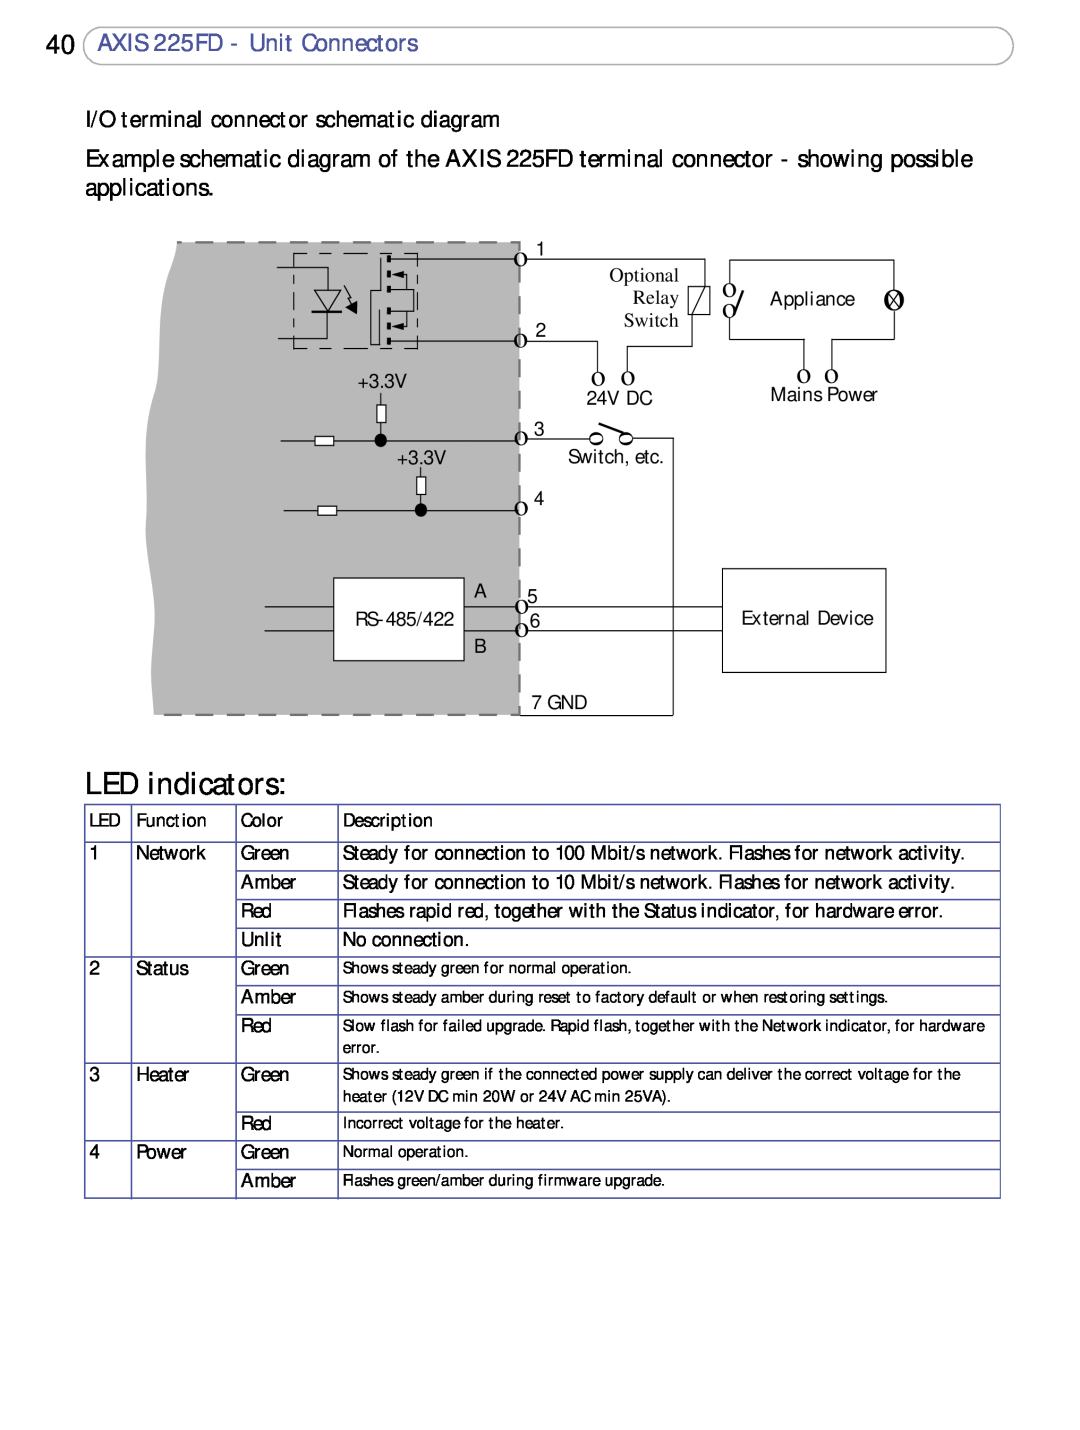 Axis Communications A o5 B o6, AXIS 225FD - Unit Connectors, I/O terminal connector schematic diagram, LED indicators 